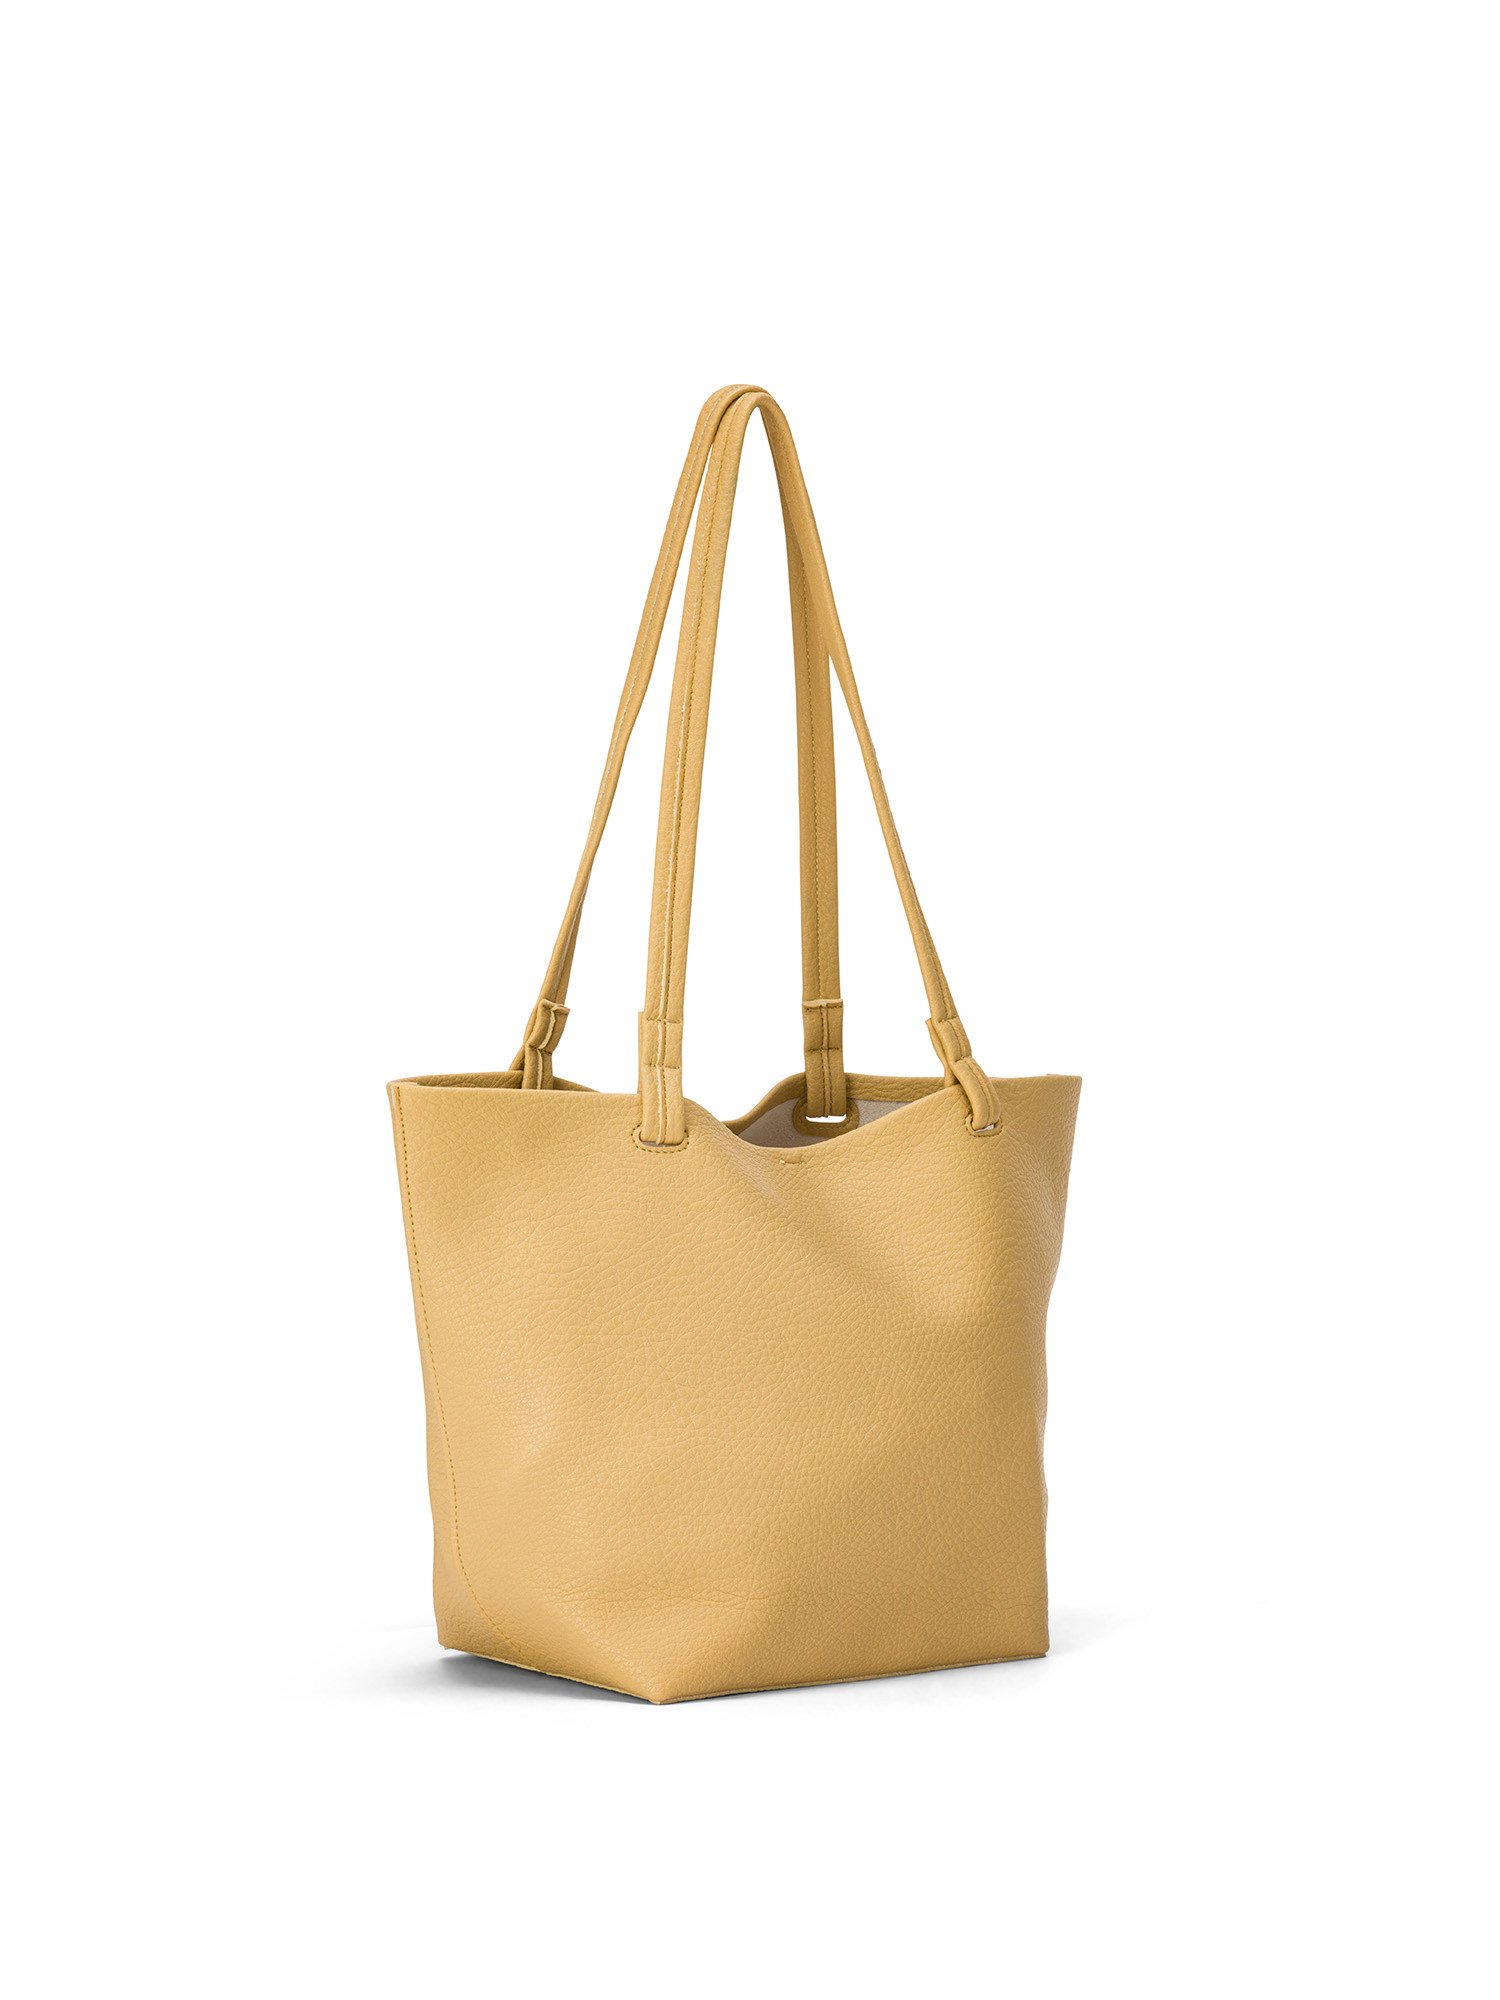 Koan - Shopping bag, Yellow, large image number 1